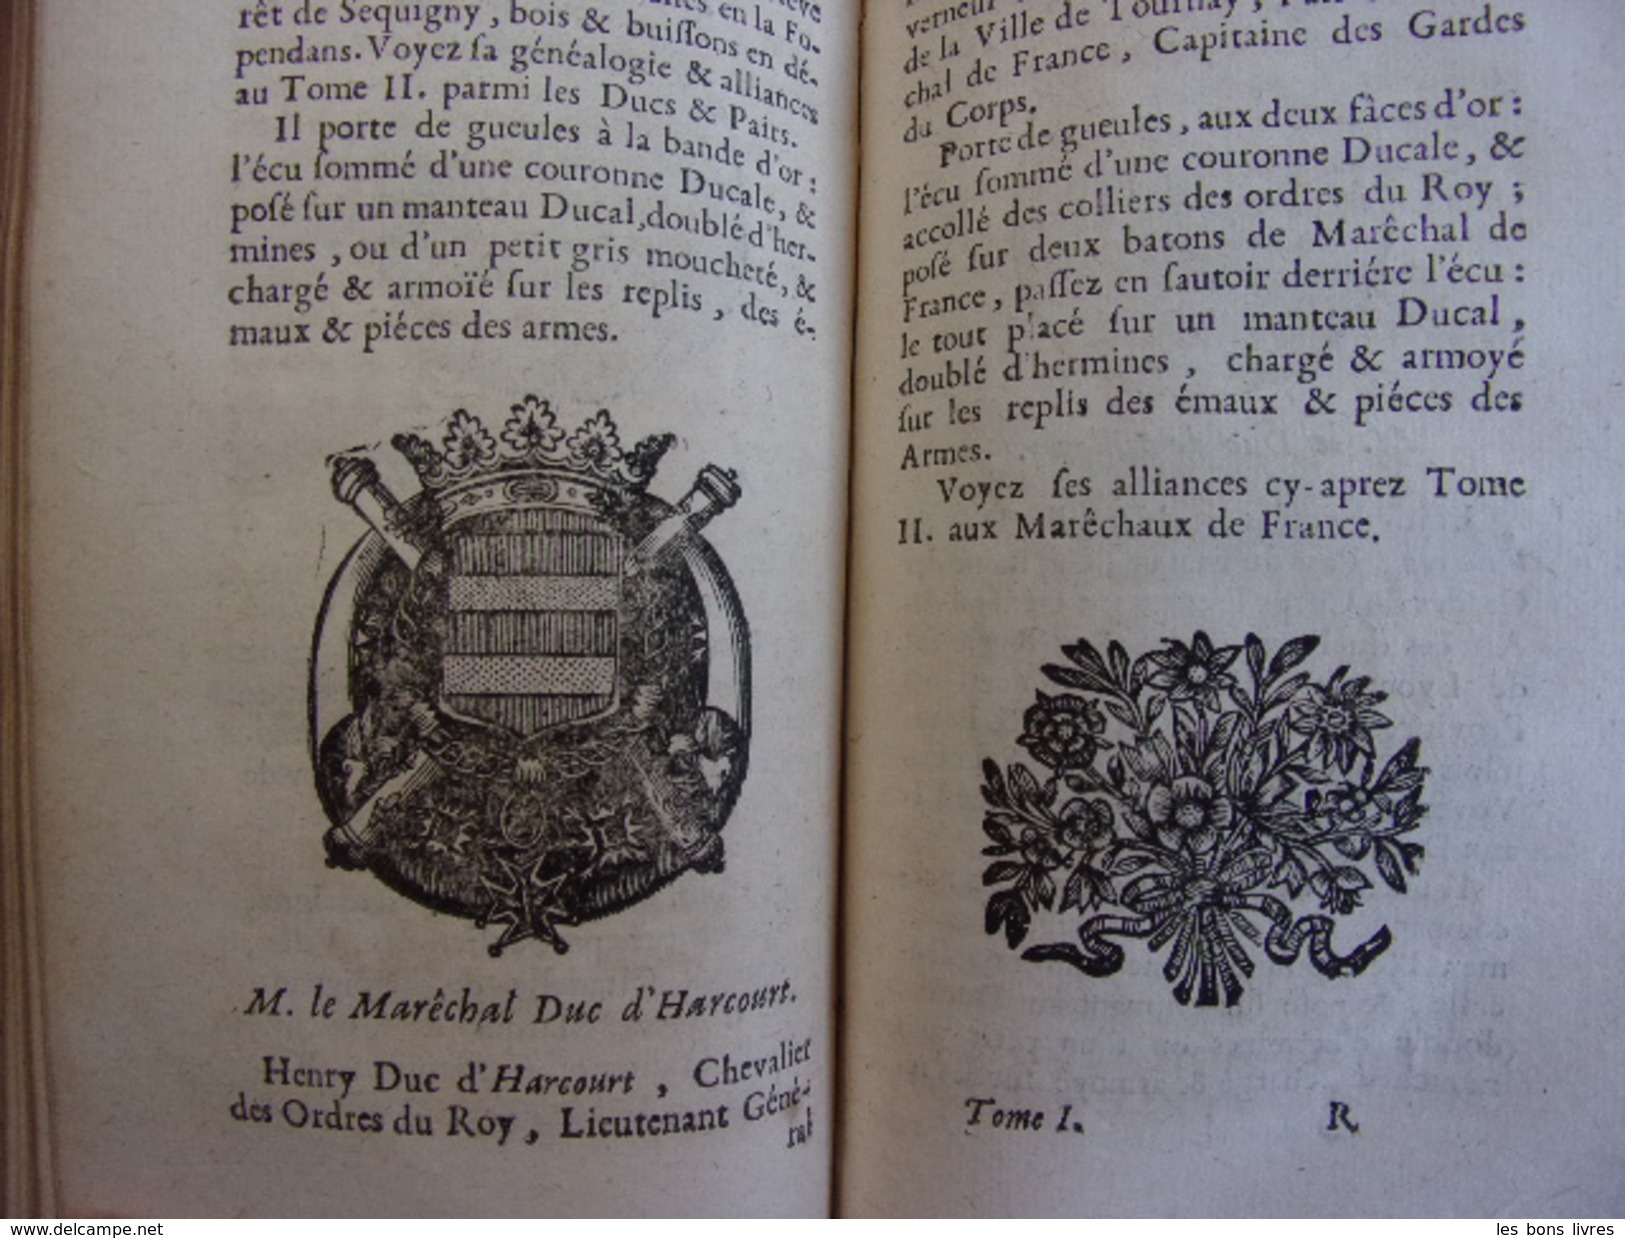 L’ÉTAT DE LA FRANCE Princes, Ducs & Pairs avec Blasons 1718